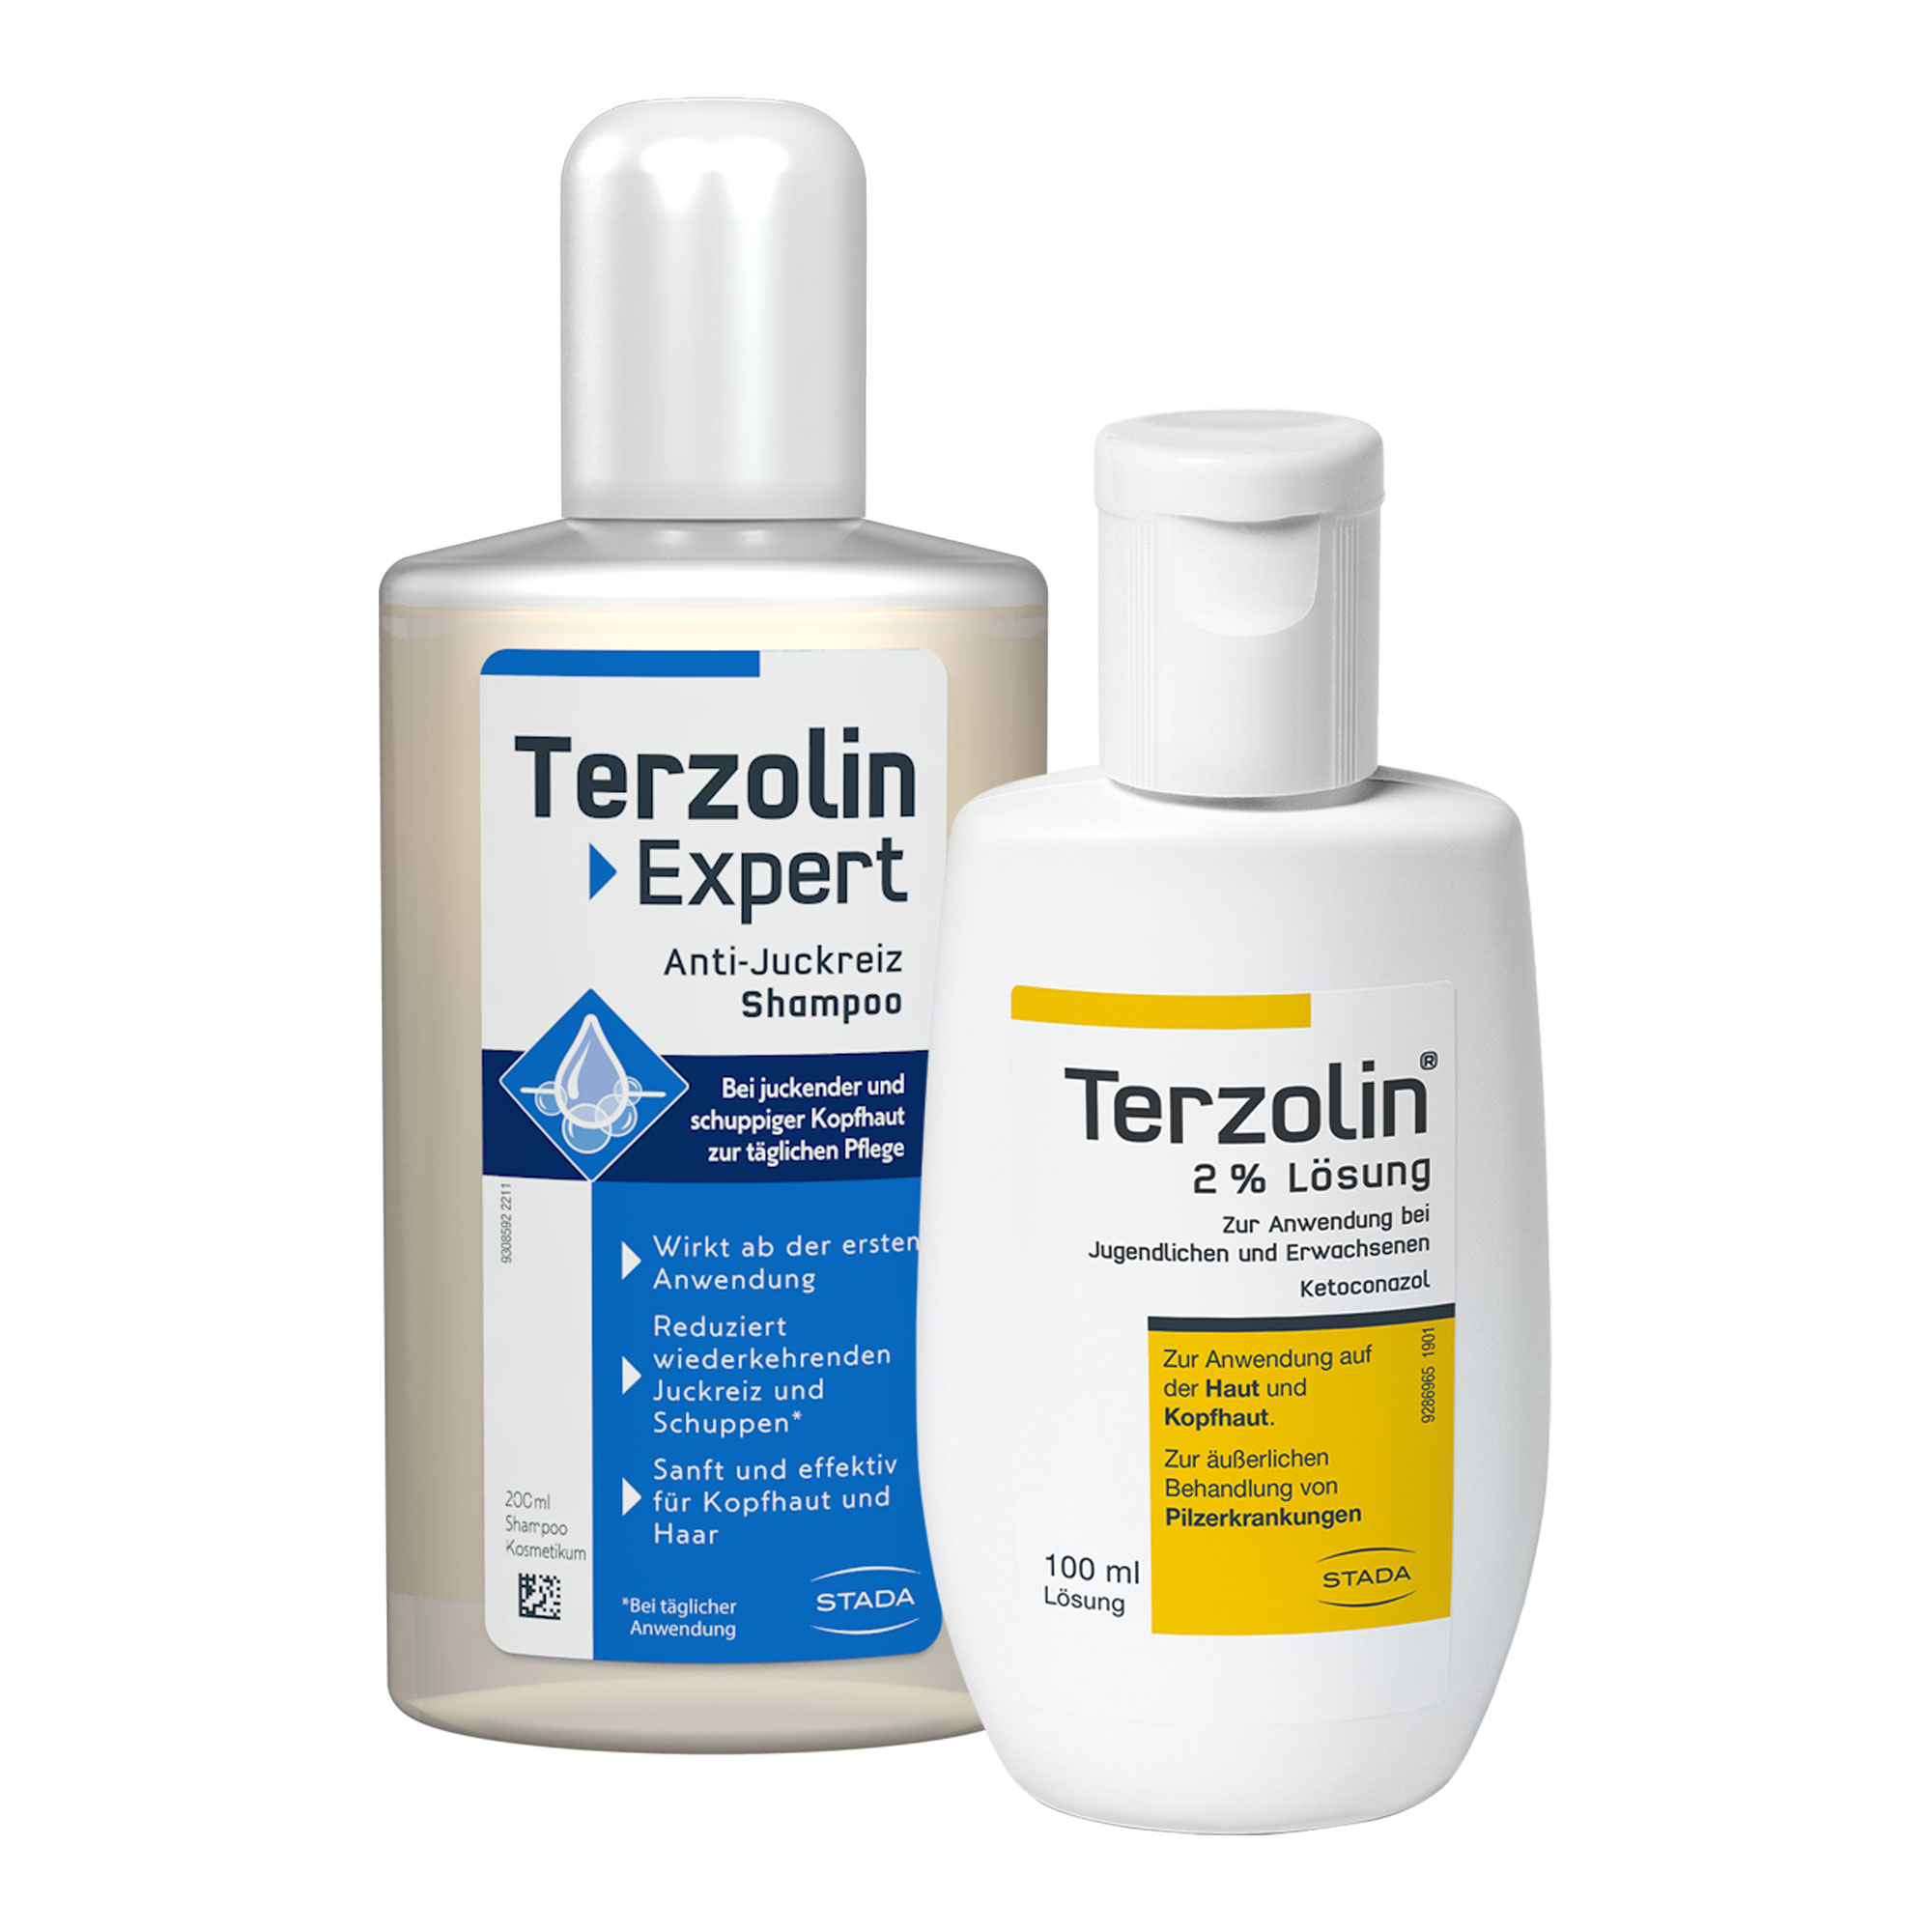 Terzolin Lösung und Anti-Juckreiz Shampoo im Set zur äußerlichen Behandlung bei Schuppen.